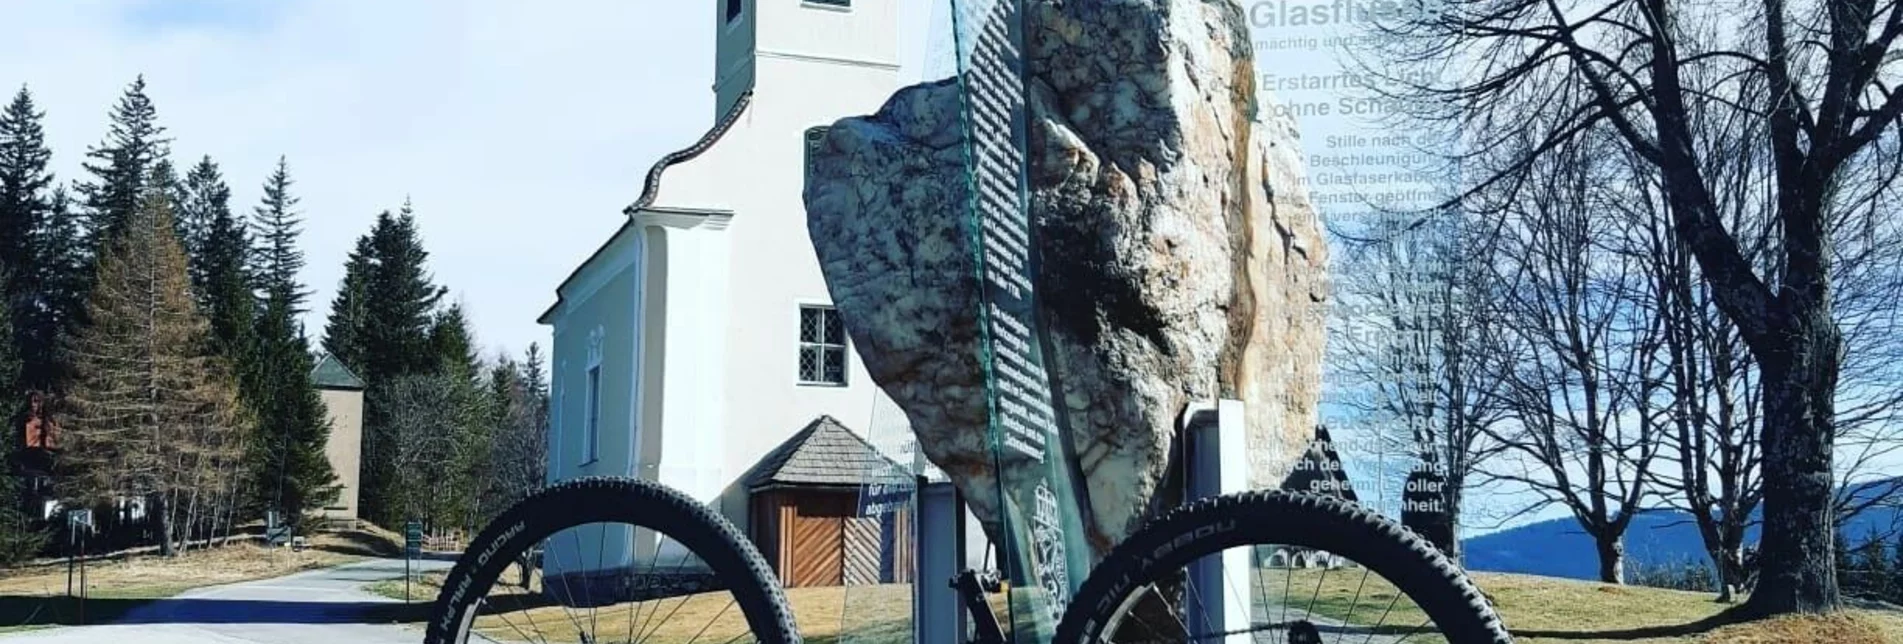 Mountainbike Bad Schwanberg-Glashütten-Tour - Touren-Impression #1 | © Südsteiermark